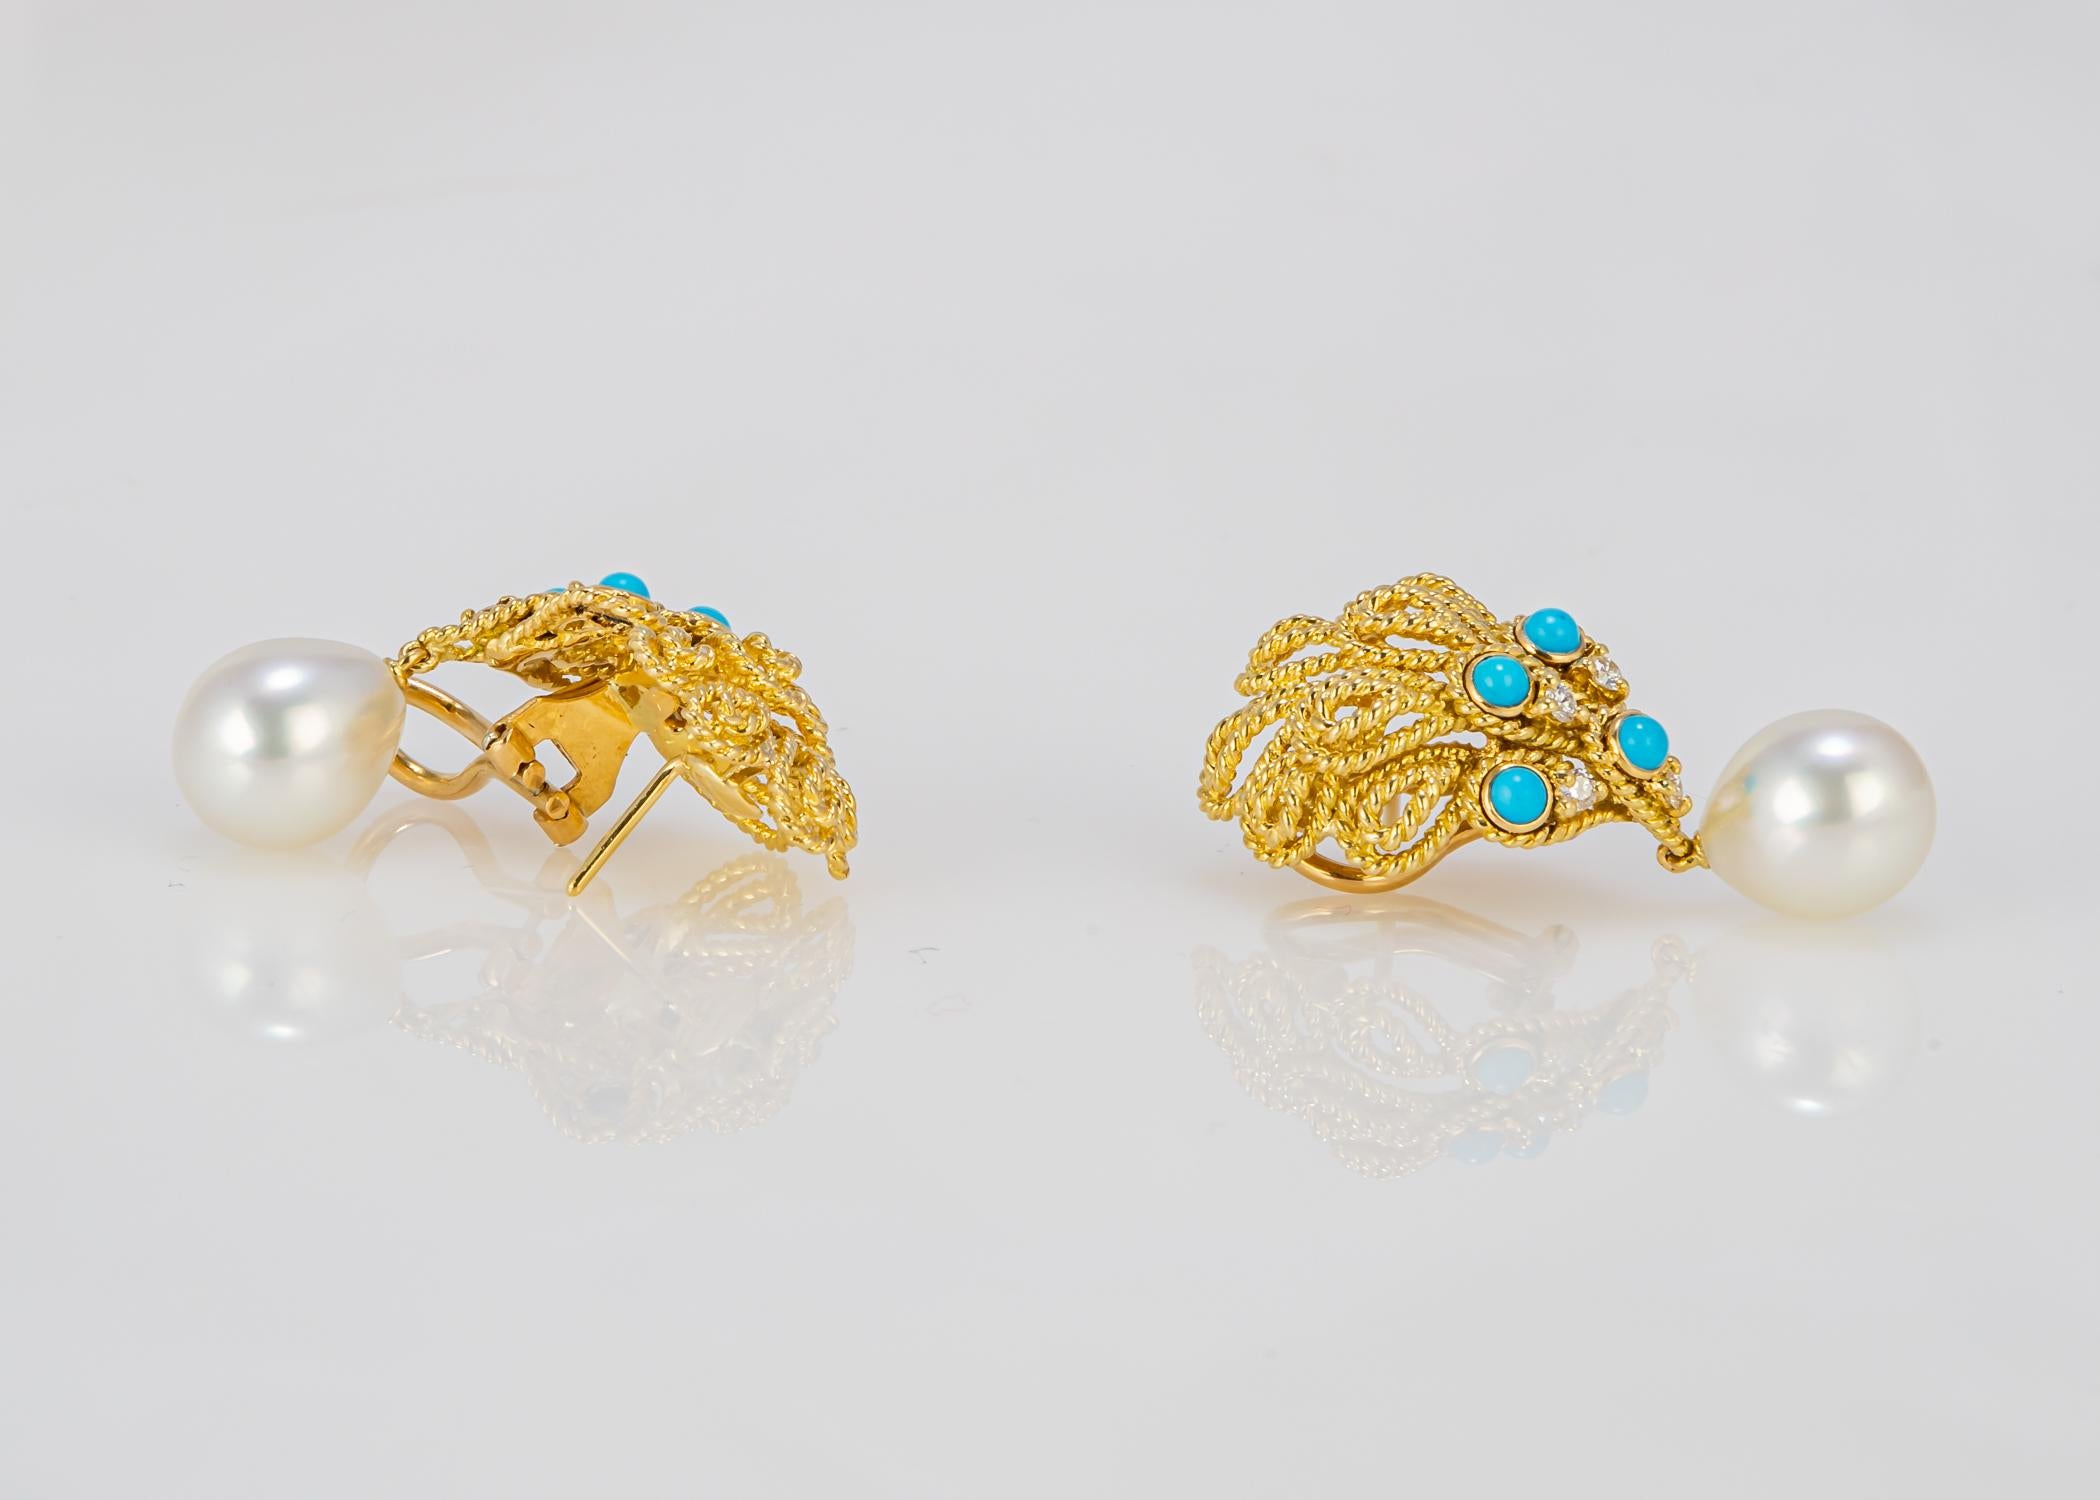 Dieses Vintage-Ohrringpaar von Tiffany & Co. ist eine Anspielung auf die Pfauenfedermotive in den frühen Tiffany-Glasmalereien. Türkise mit Diamanten akzentuiert und mit Südseeperlen vollendet, schaffen schlichte Eleganz. Mit einer Länge von 1 1/2